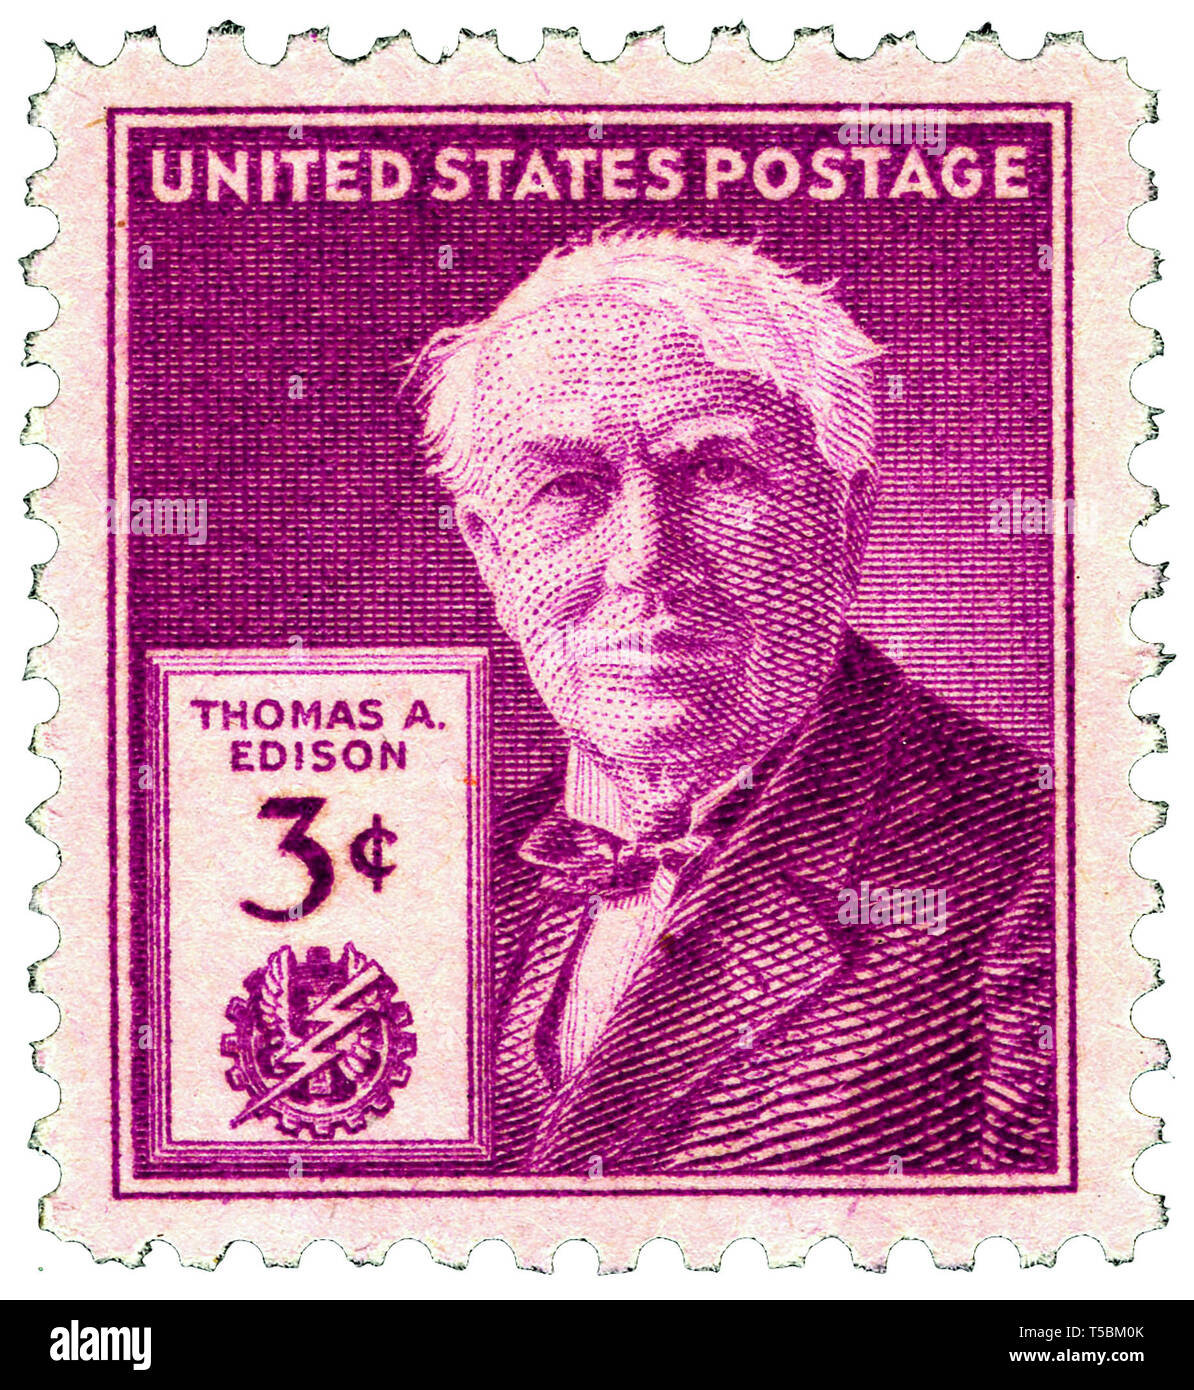 Thomas Edison (1847-1931) 3-Cent 1947 Problem US-Stempel, freigegeben der 100. Jahrestag seiner Geburt zu kennzeichnen, 11. Februar 1947, US Postal Service Stockfoto